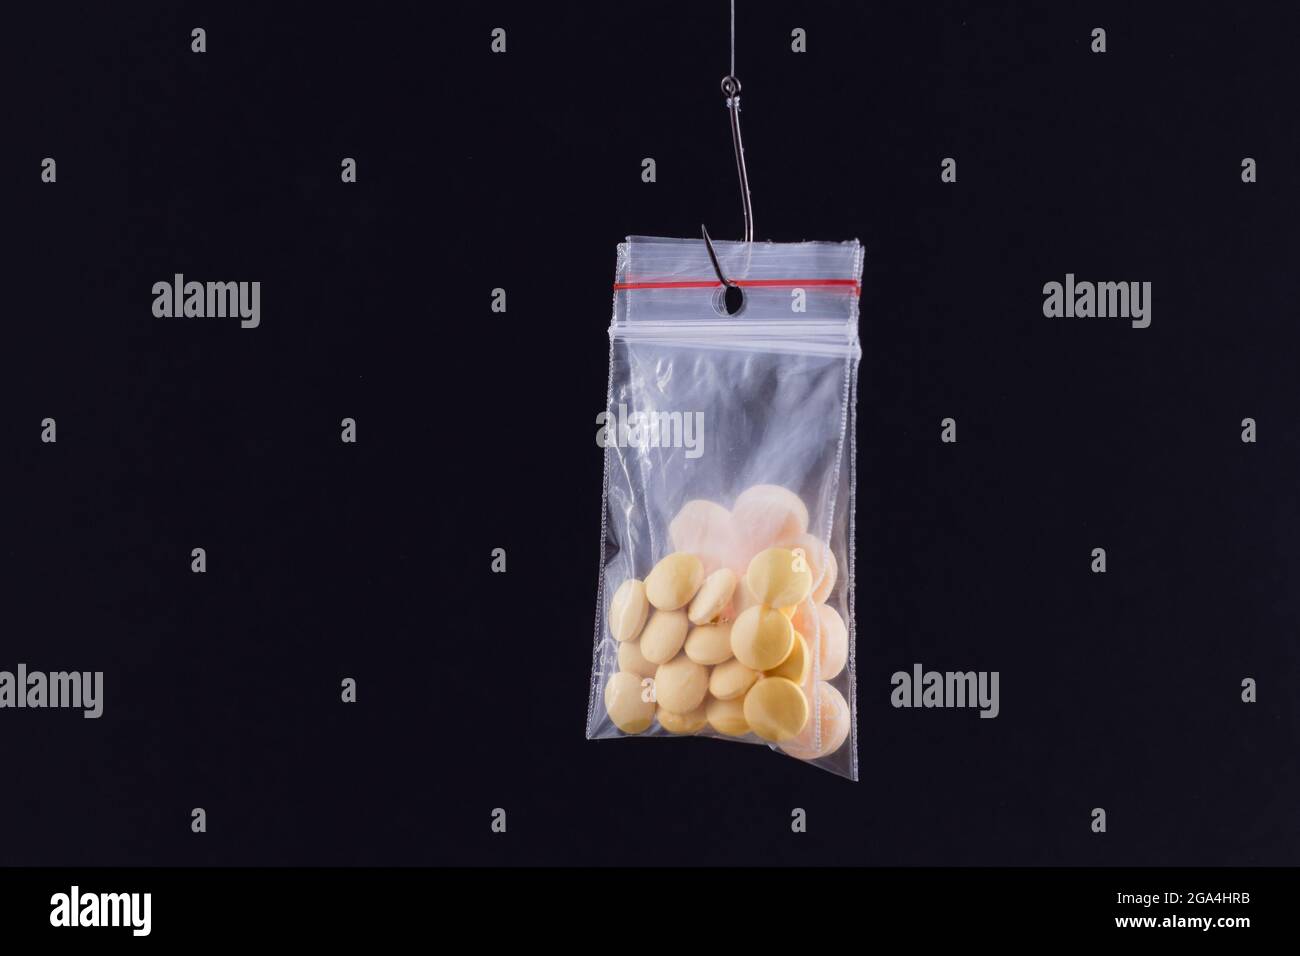 Le piège pharmaceutique et la toxicomanie - pilules colorées ou comprimés suspendus dans un petit sac Ziplock sur un crochet de pêche contre le fond noir Banque D'Images